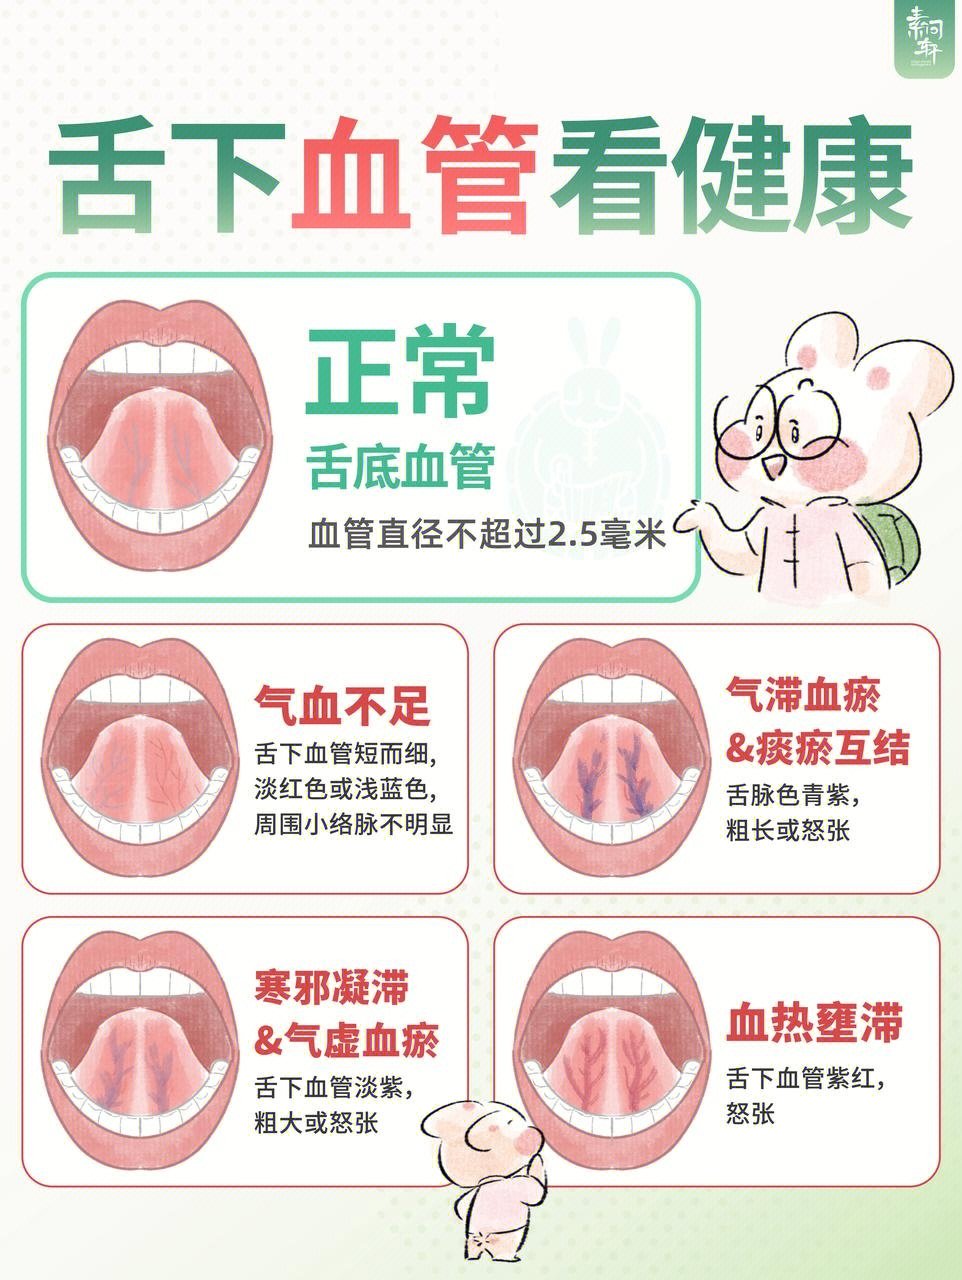 每个人舌下血管的形态,长短,颜色都不一样,有的特别干净,看起来就是一